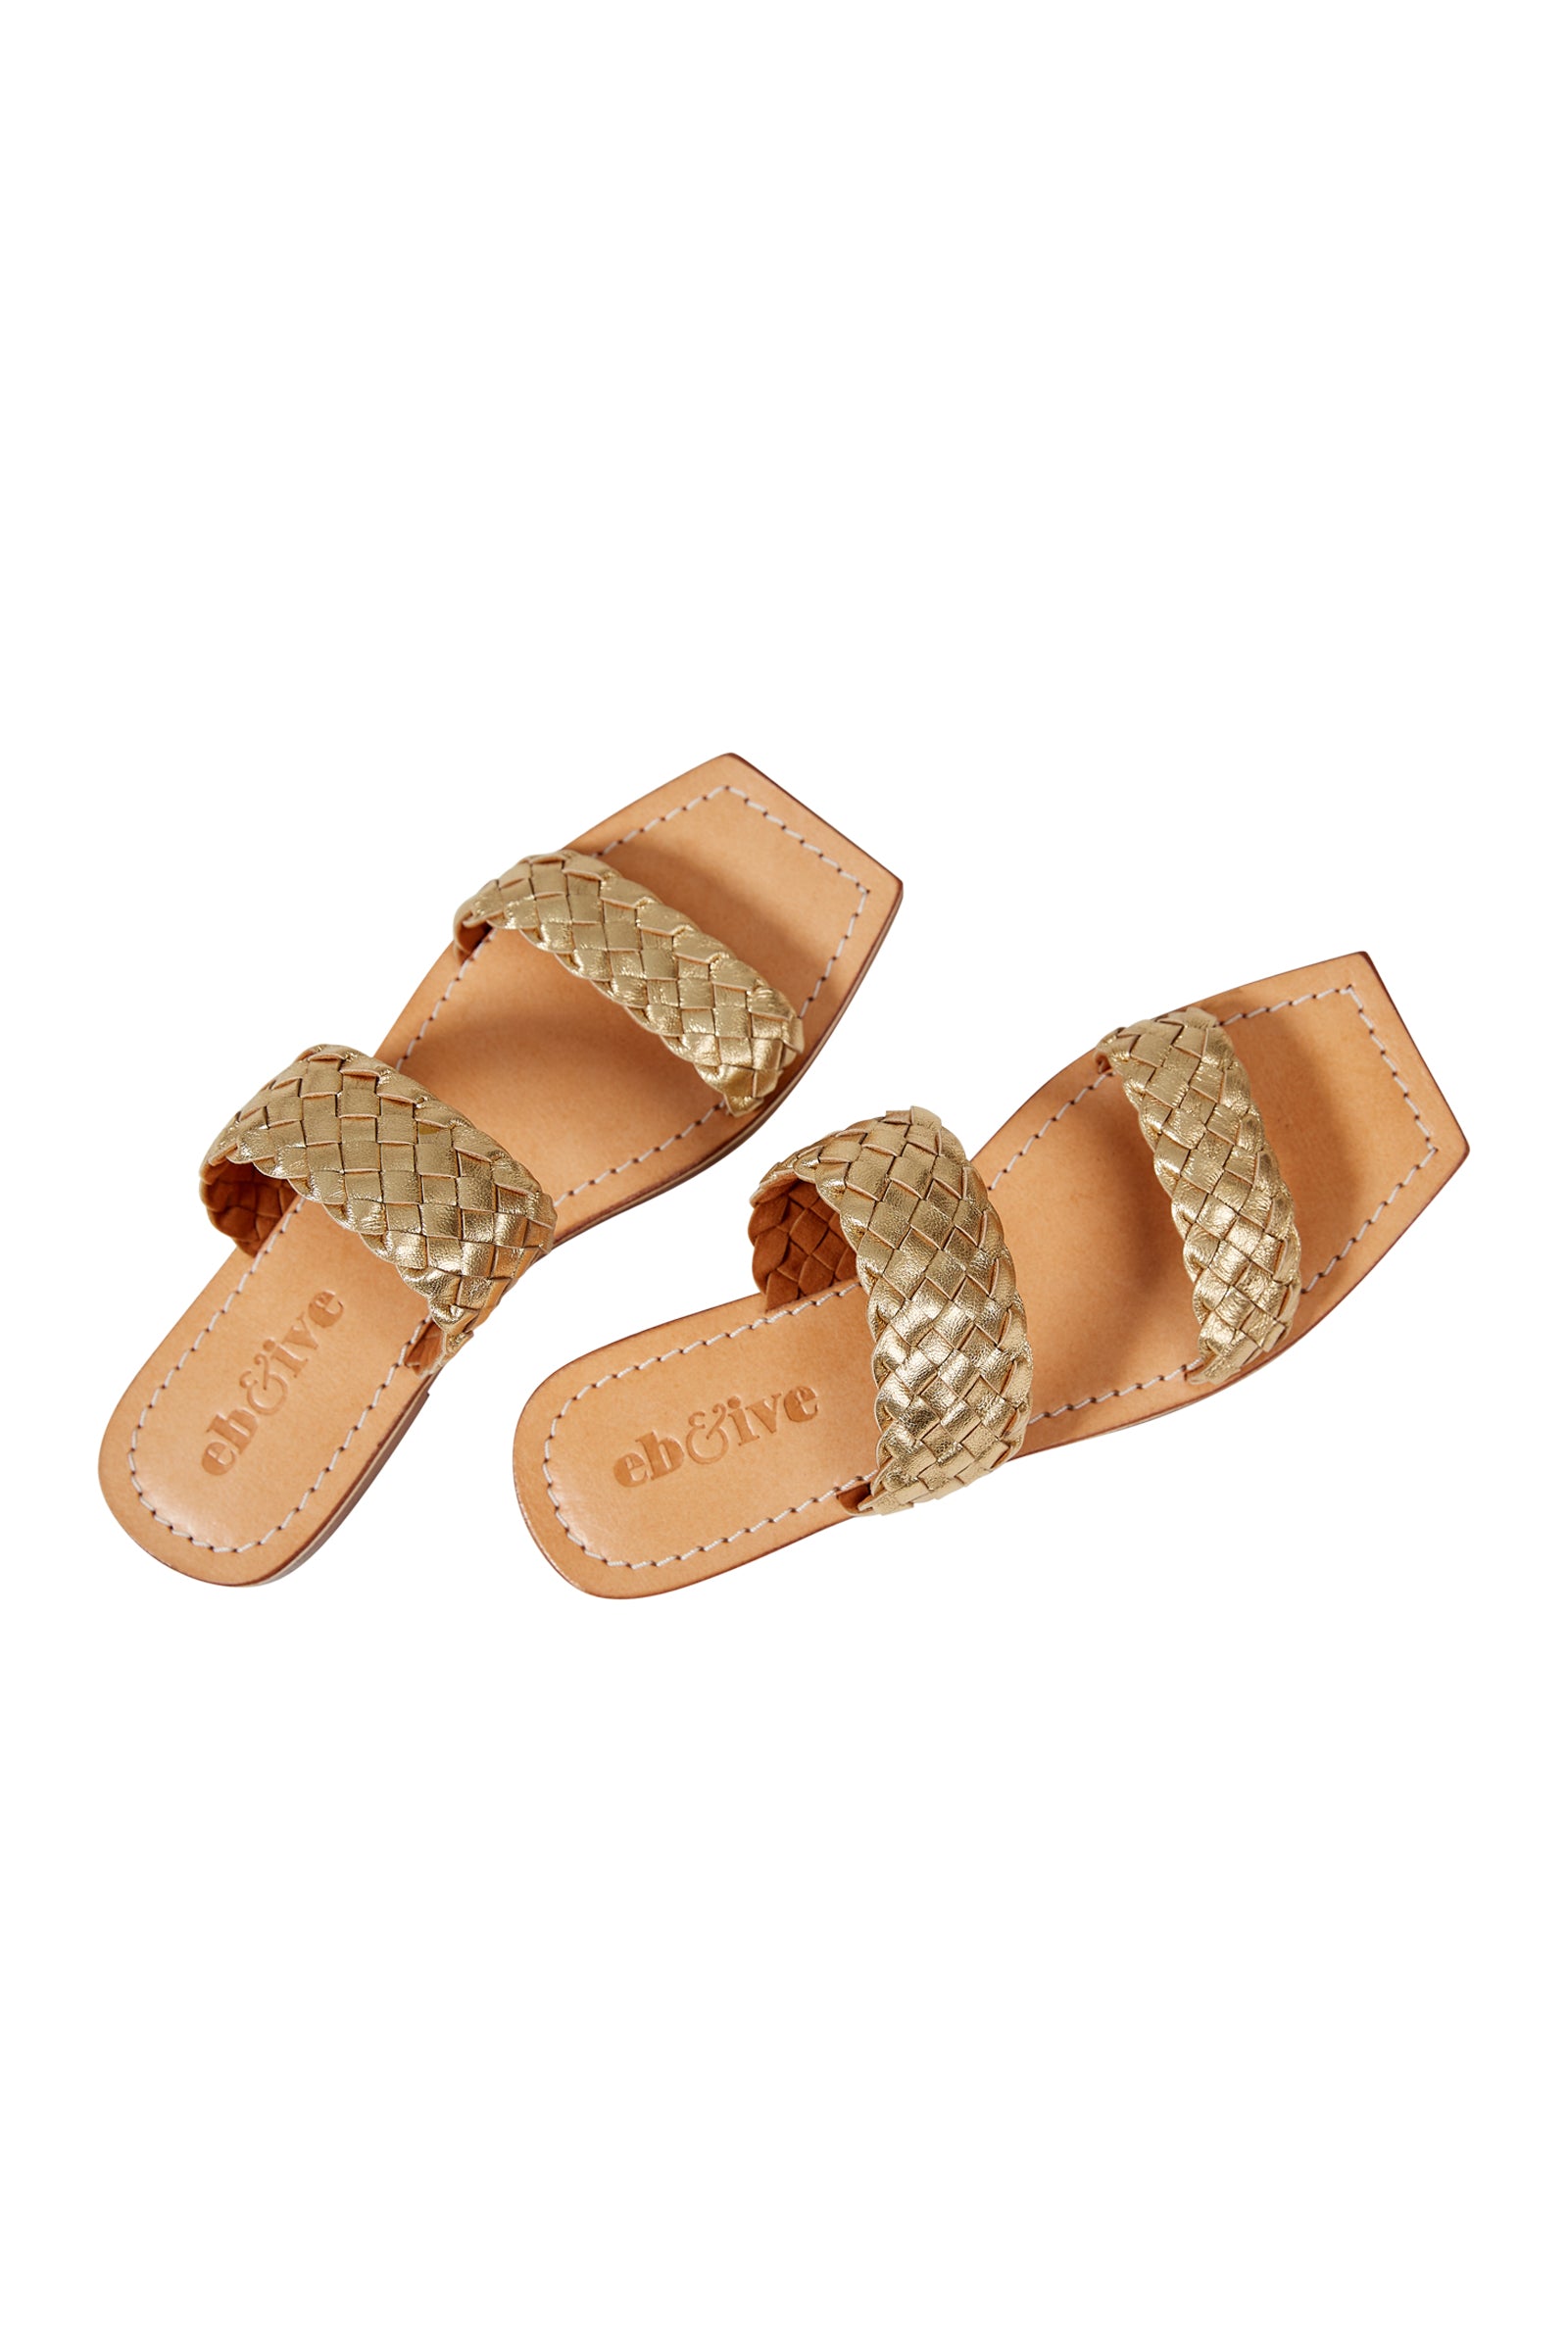 La Vie Sandal - Gold - eb&ive Footwear - Sandals